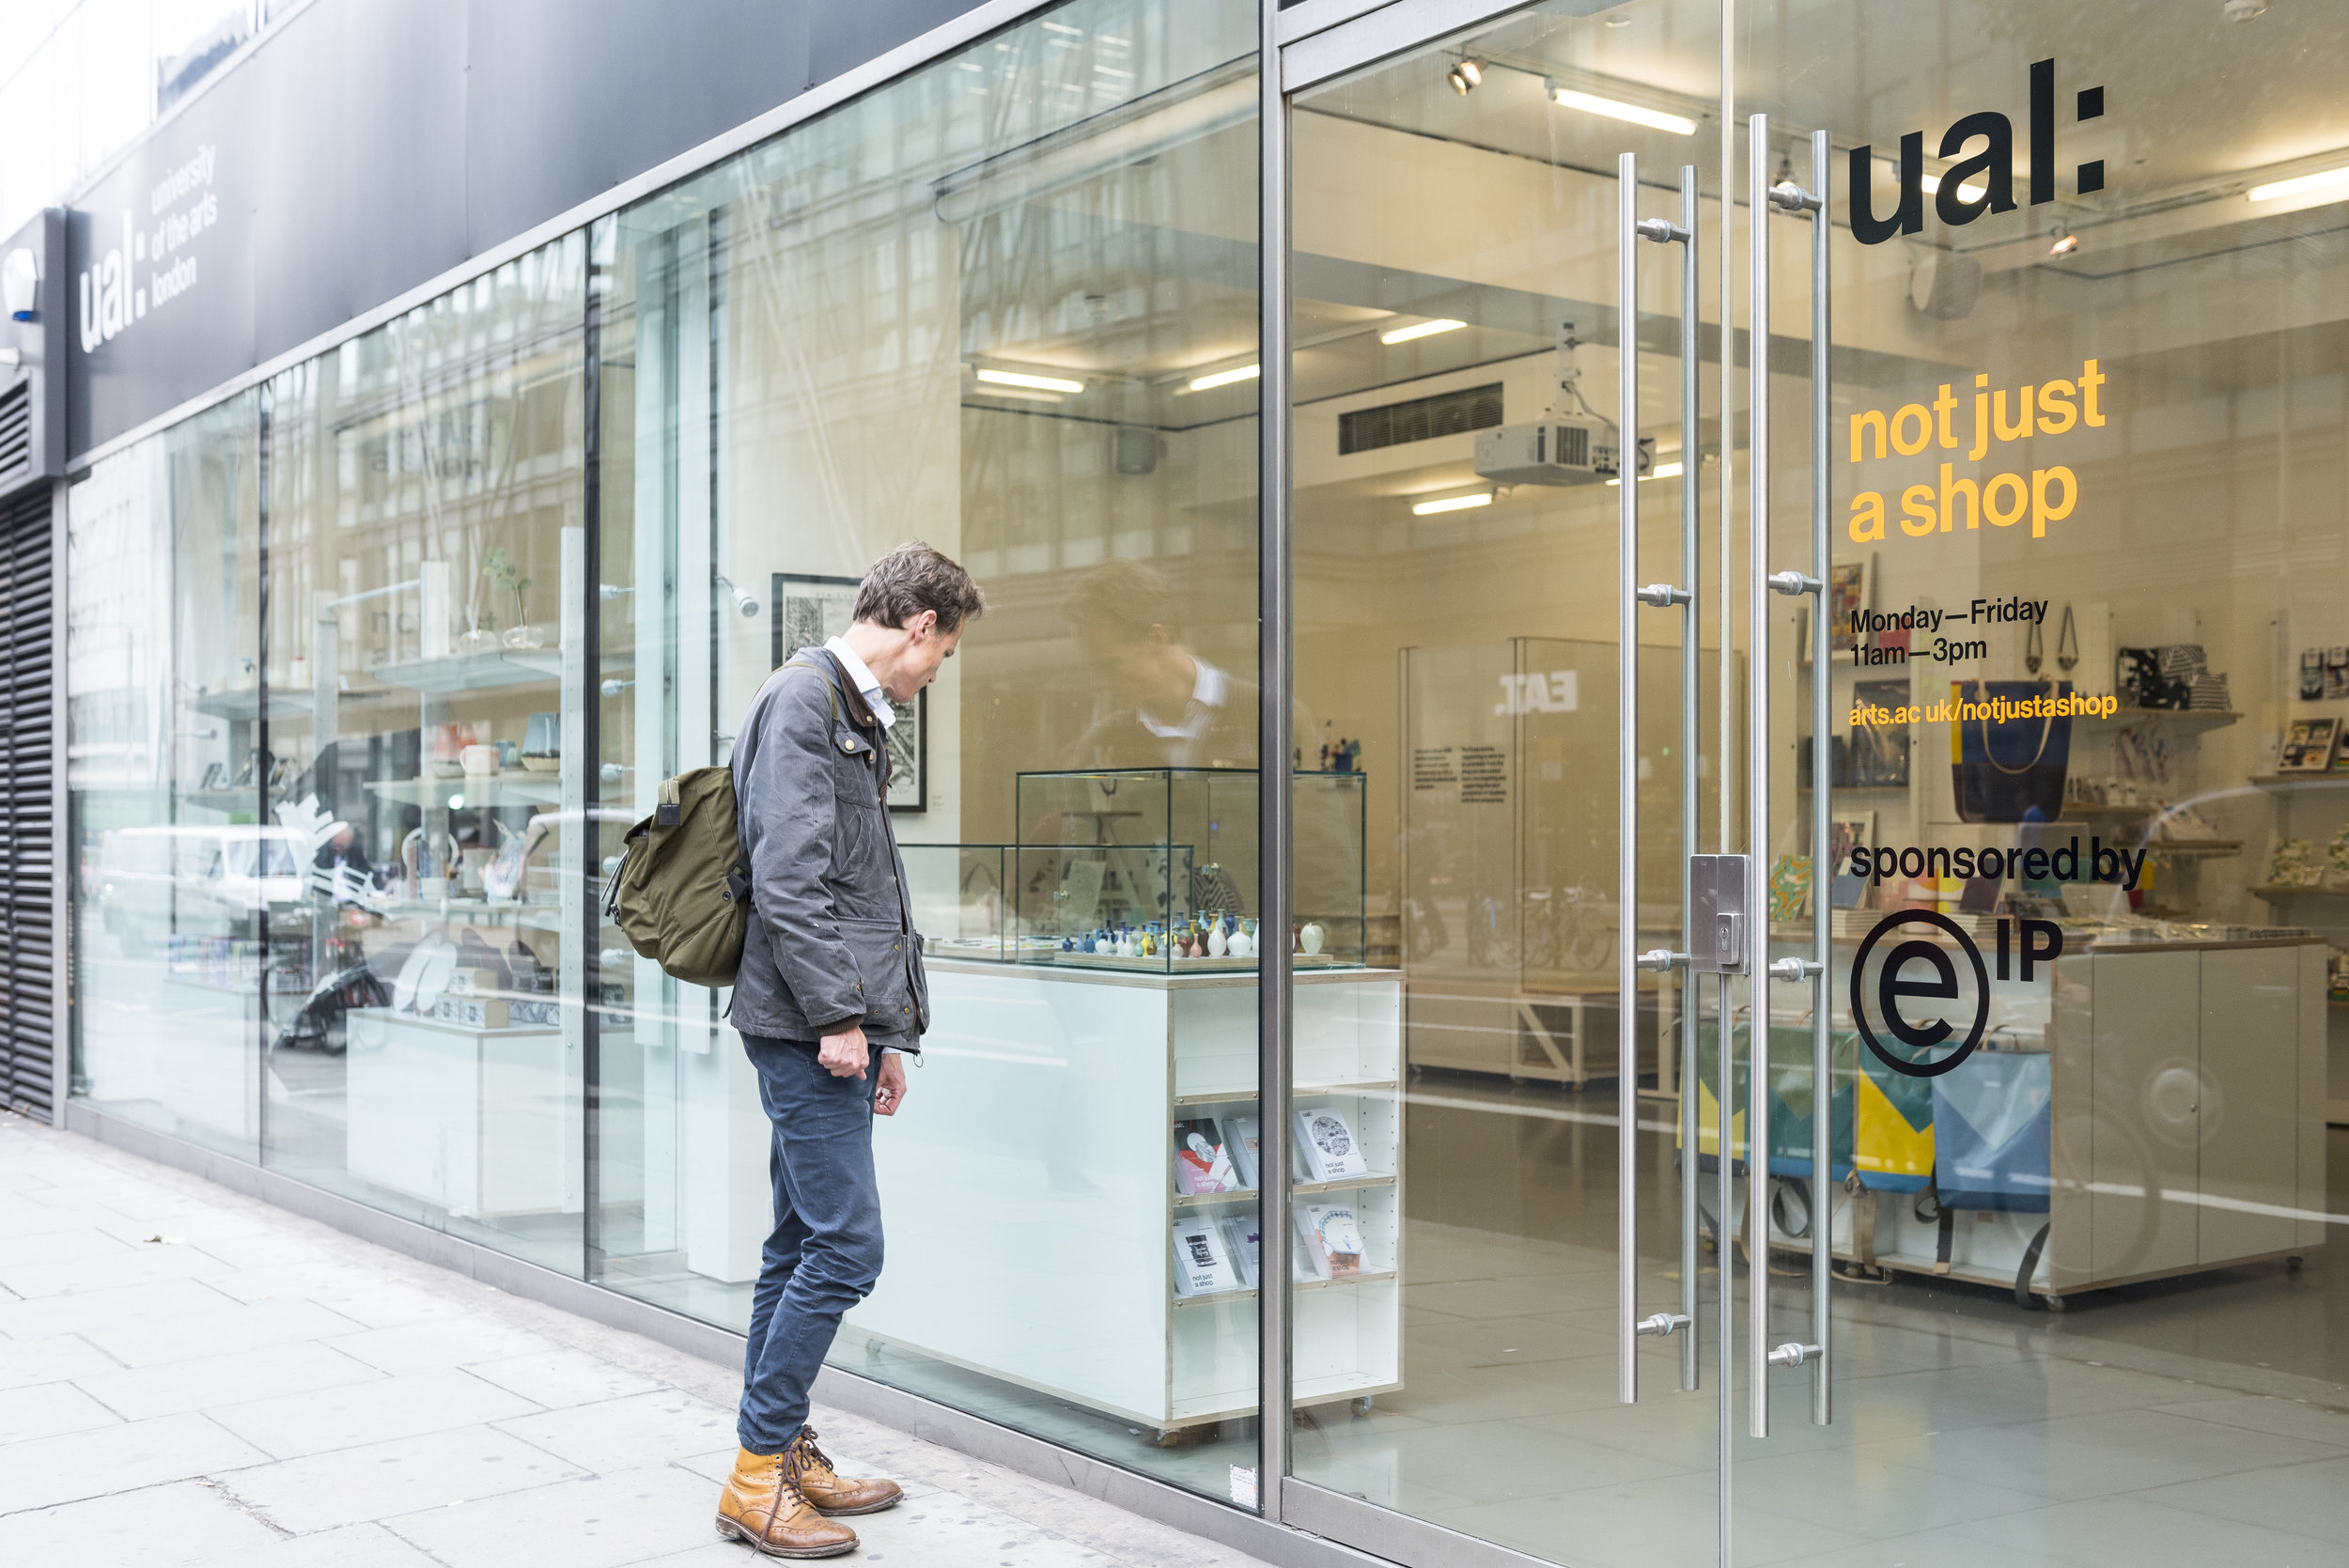 Just магазин. Not just магазин. UAL университет в Лондоне. UAL University of the Arts London. Why not shop